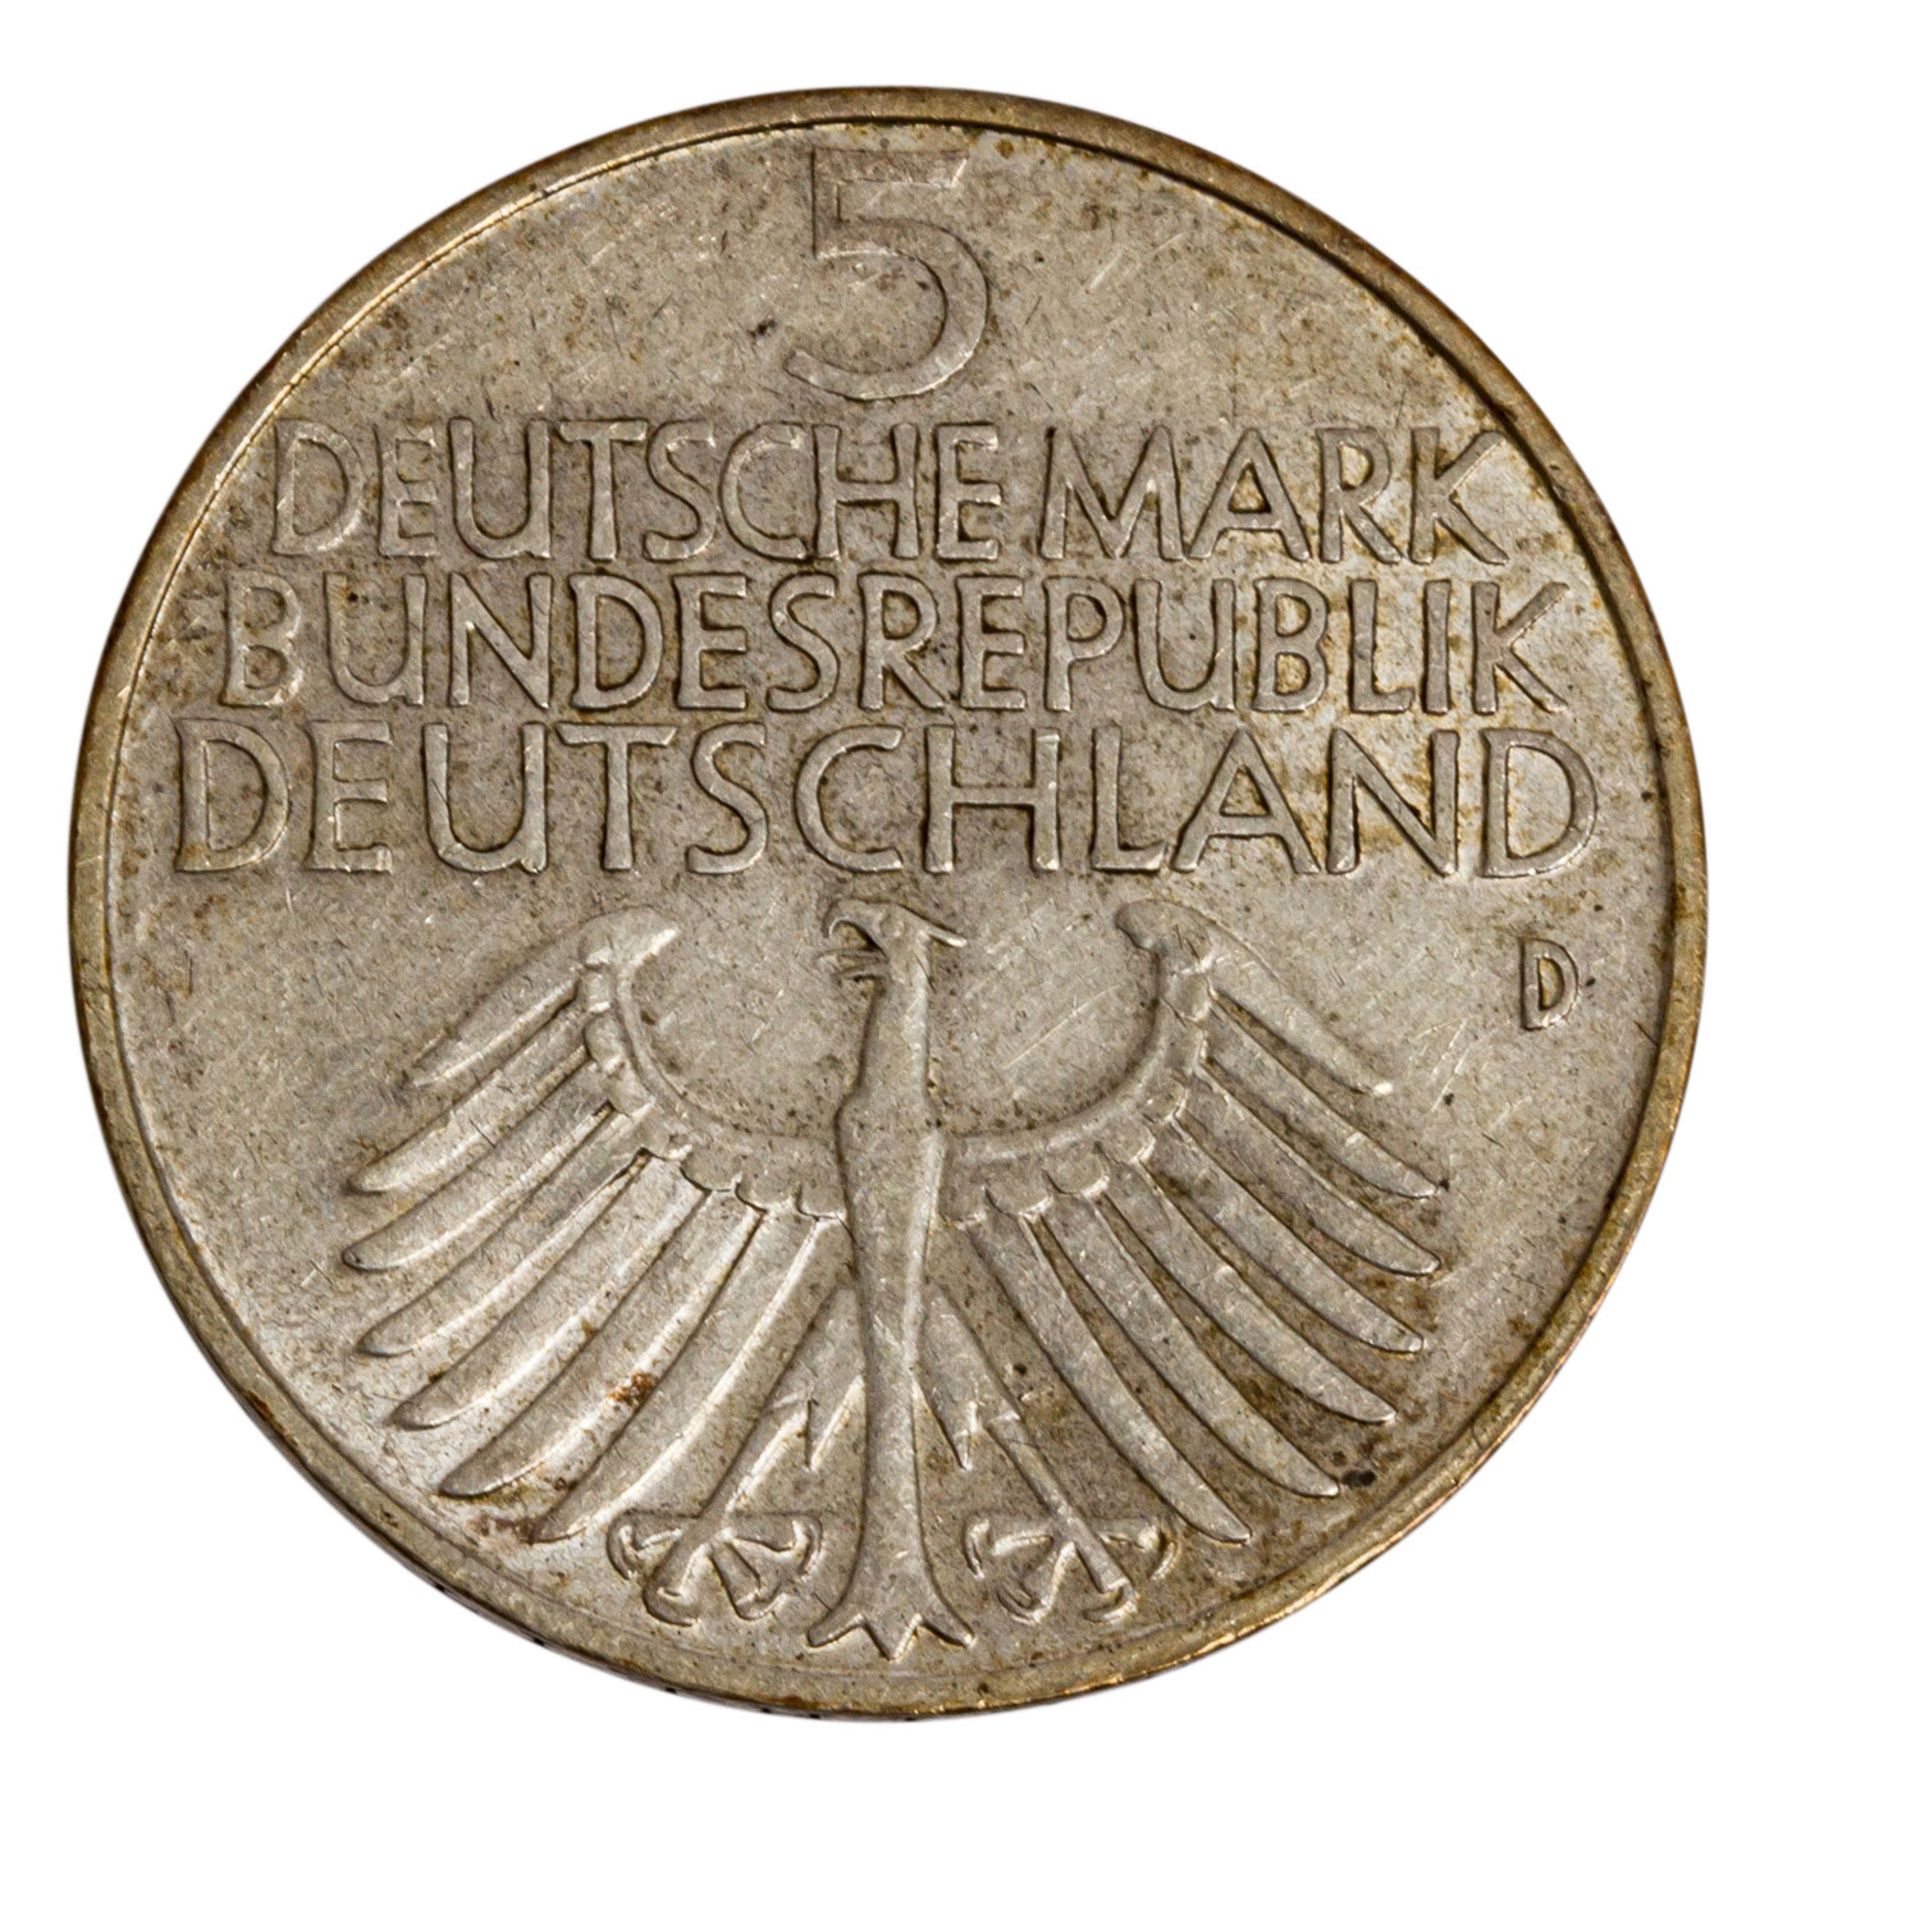 BRD - Germanisches Museum 5 Mark, 1952/D, ss. FRG - Germanic museum - 5 mark, 1952/D, VF - Bild 2 aus 2